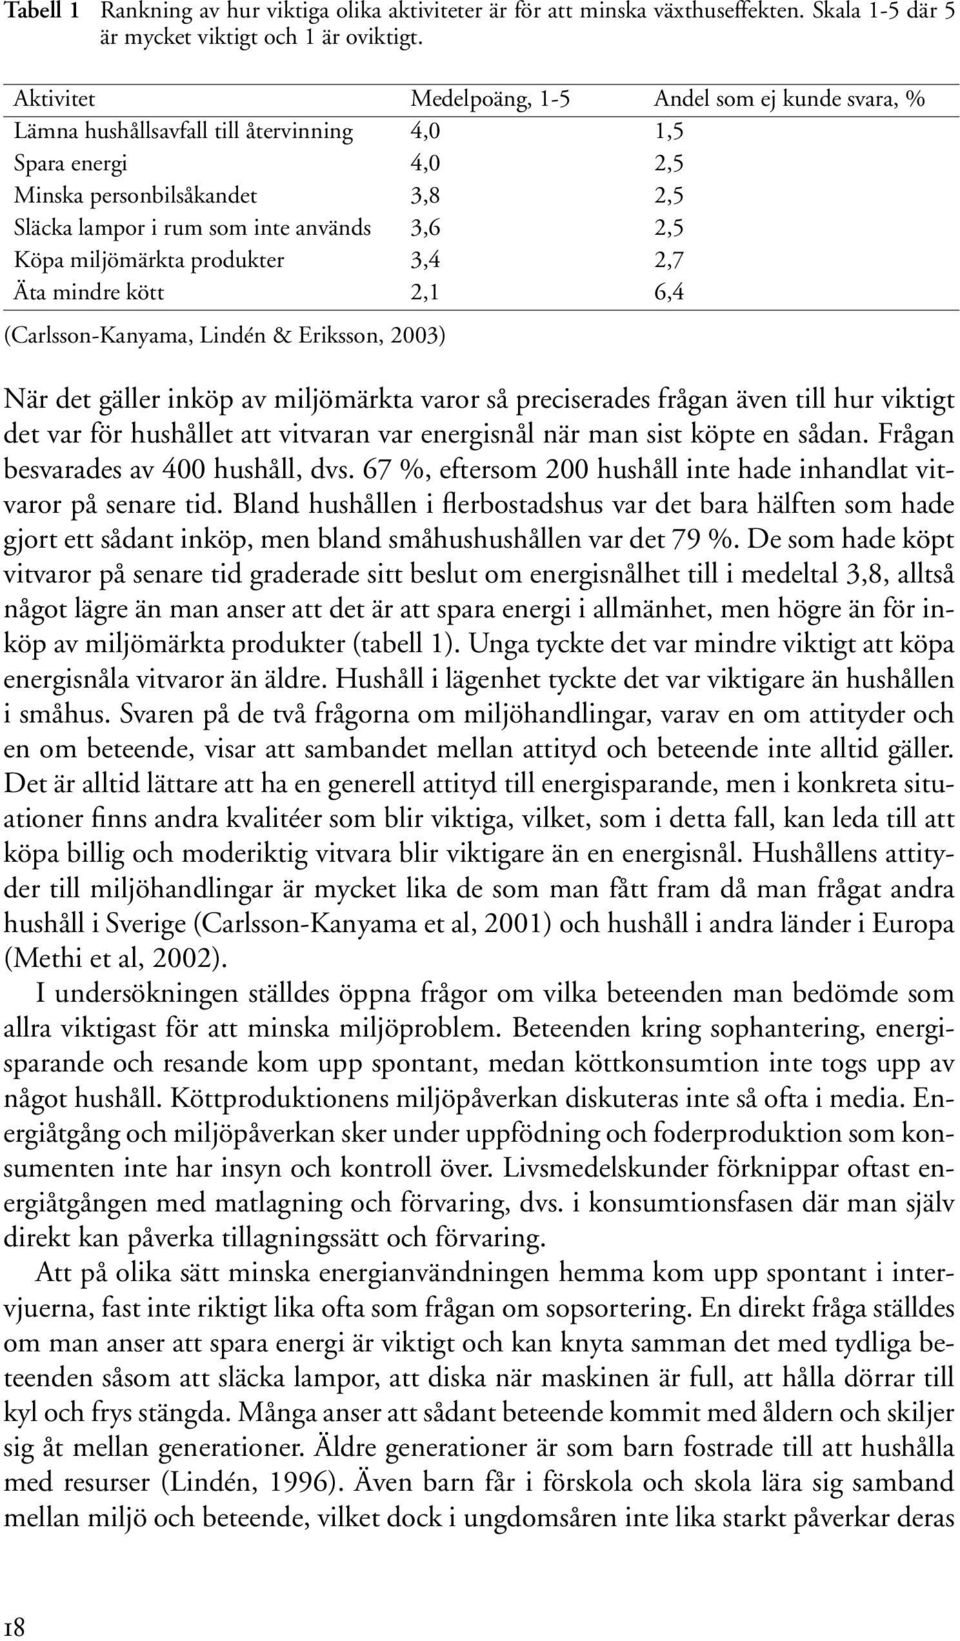 Köpa miljömärkta produkter 3,4 2,7 Äta mindre kött 2,1 6,4 (Carlsson-Kanyama, Lindén & Eriksson, 2003) När det gäller inköp av miljömärkta varor så preciserades frågan även till hur viktigt det var